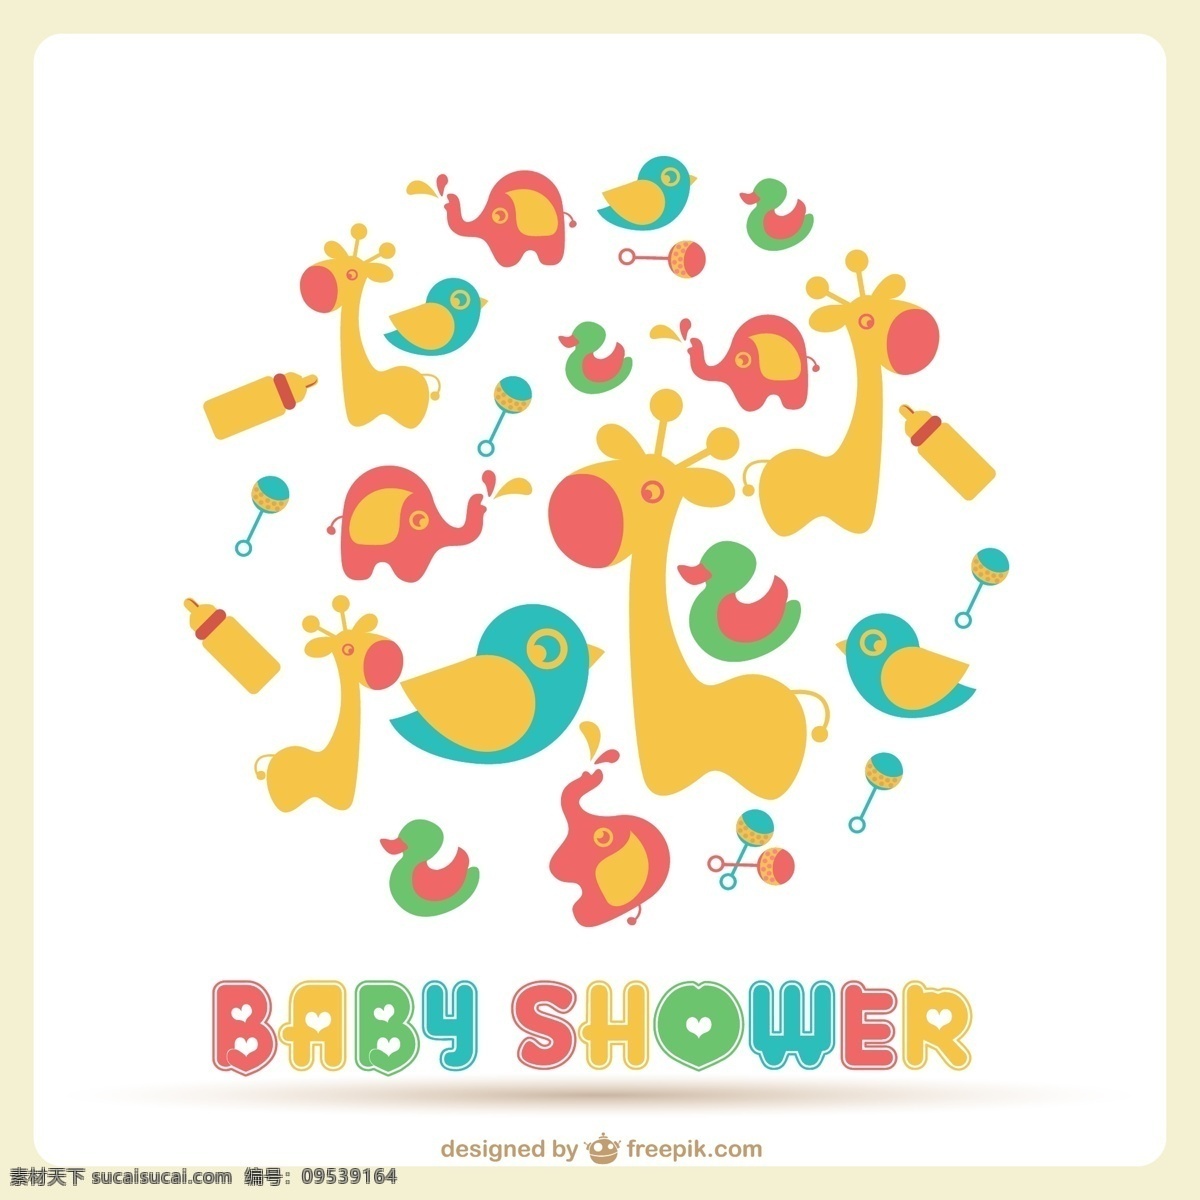 婴儿 洗澡 卡 很多 玩具 邀请 卡片 鸟类 婴儿淋浴 图标 模板 动物 字体 艺术 可爱 图形 大象 布局 周年纪念 图形设计 邀请卡 白色